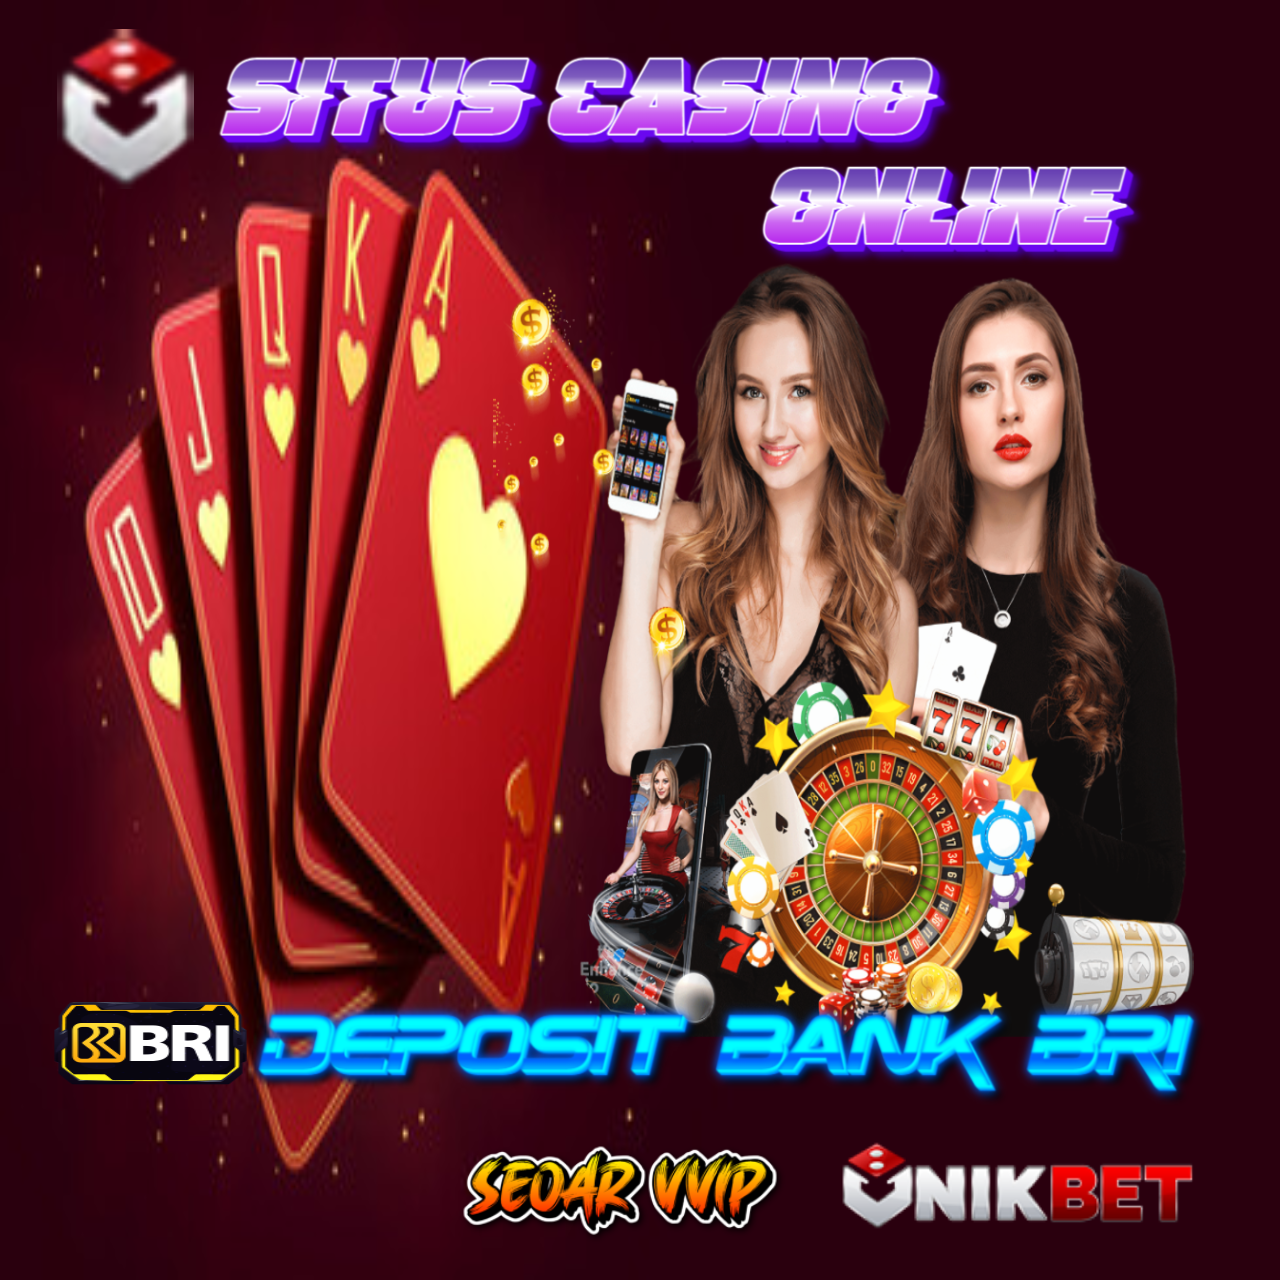 UNIKBET: Situs Casino Bank Bri Terpercaya No.1 Di Indonesia